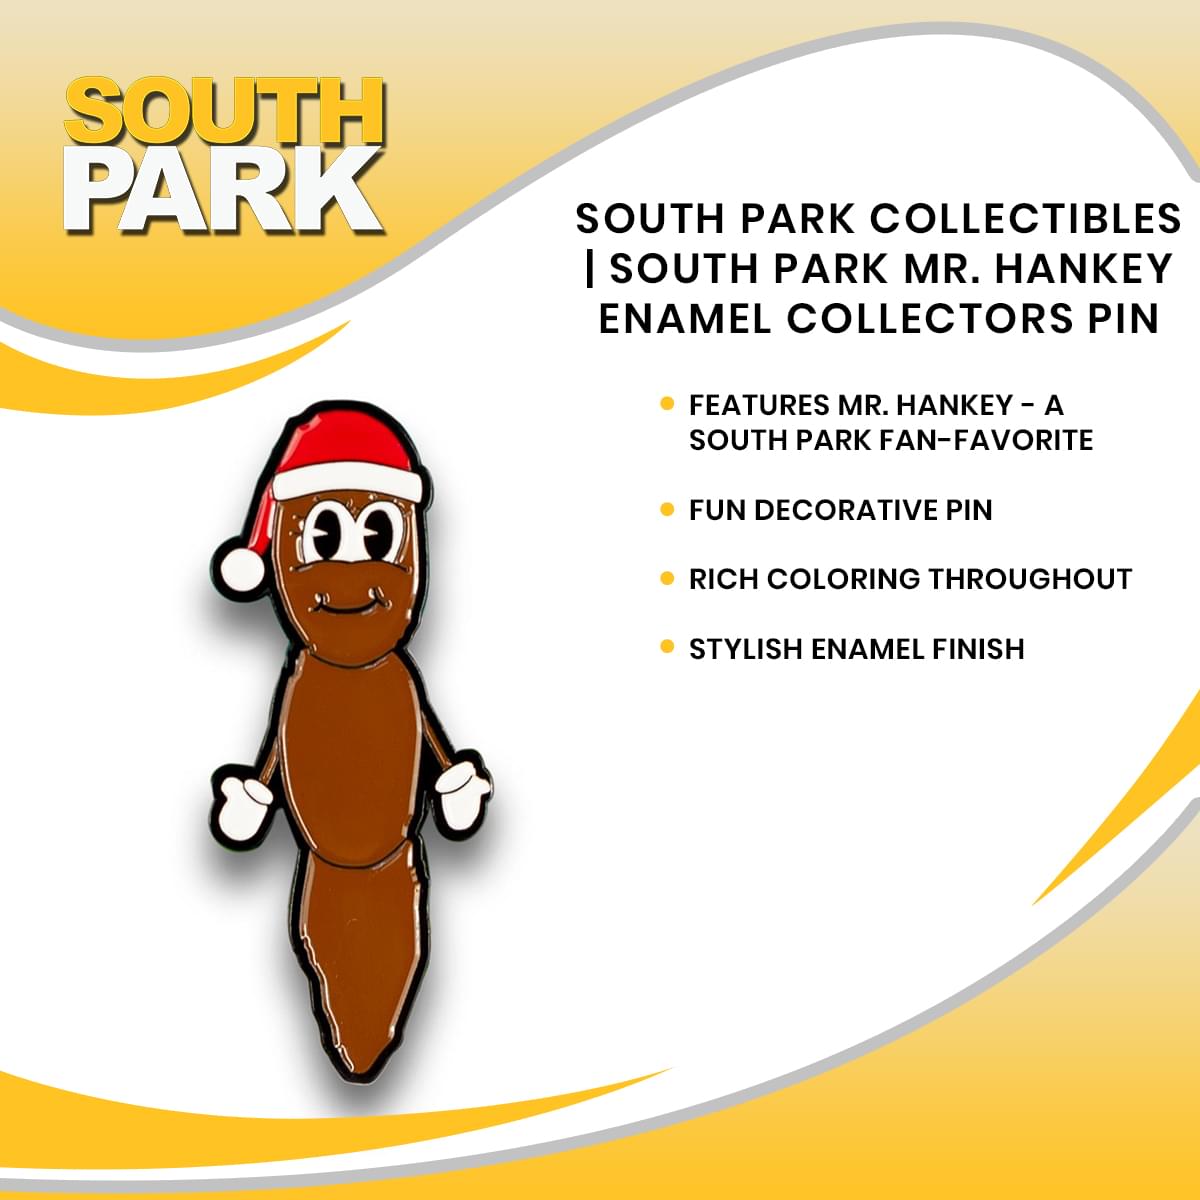 South Park Collectibles | South Park Mr. Hankey Enamel Collectors Pin